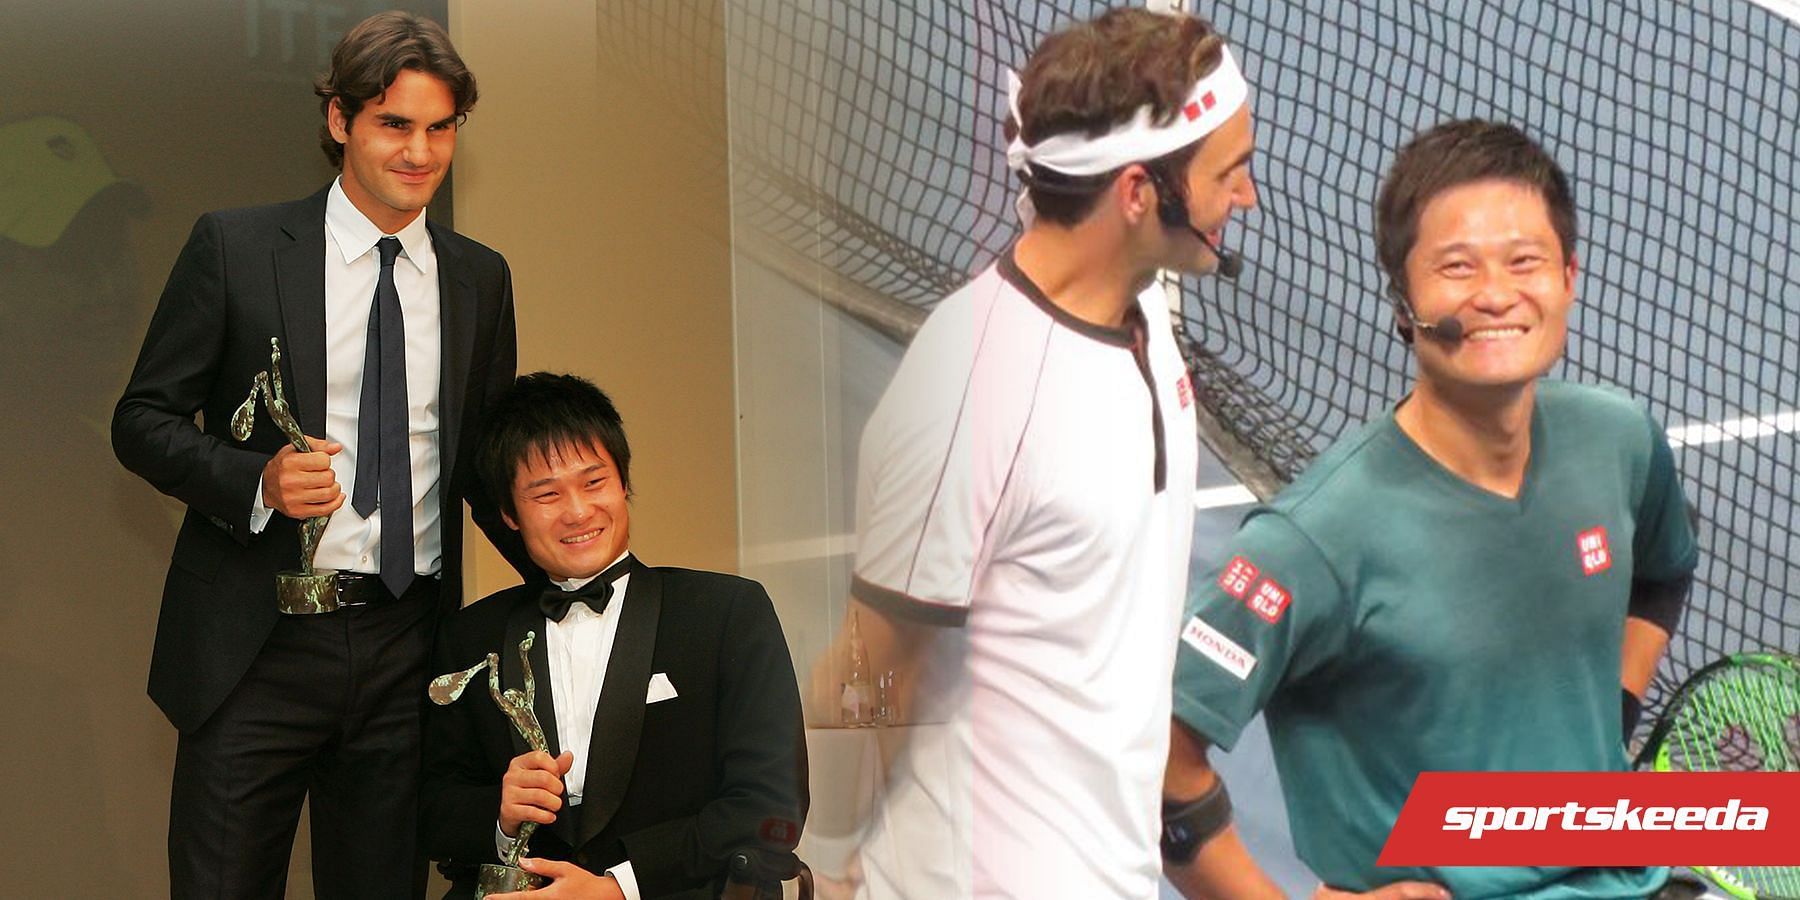 Roger Federer and Shingo Kunieda